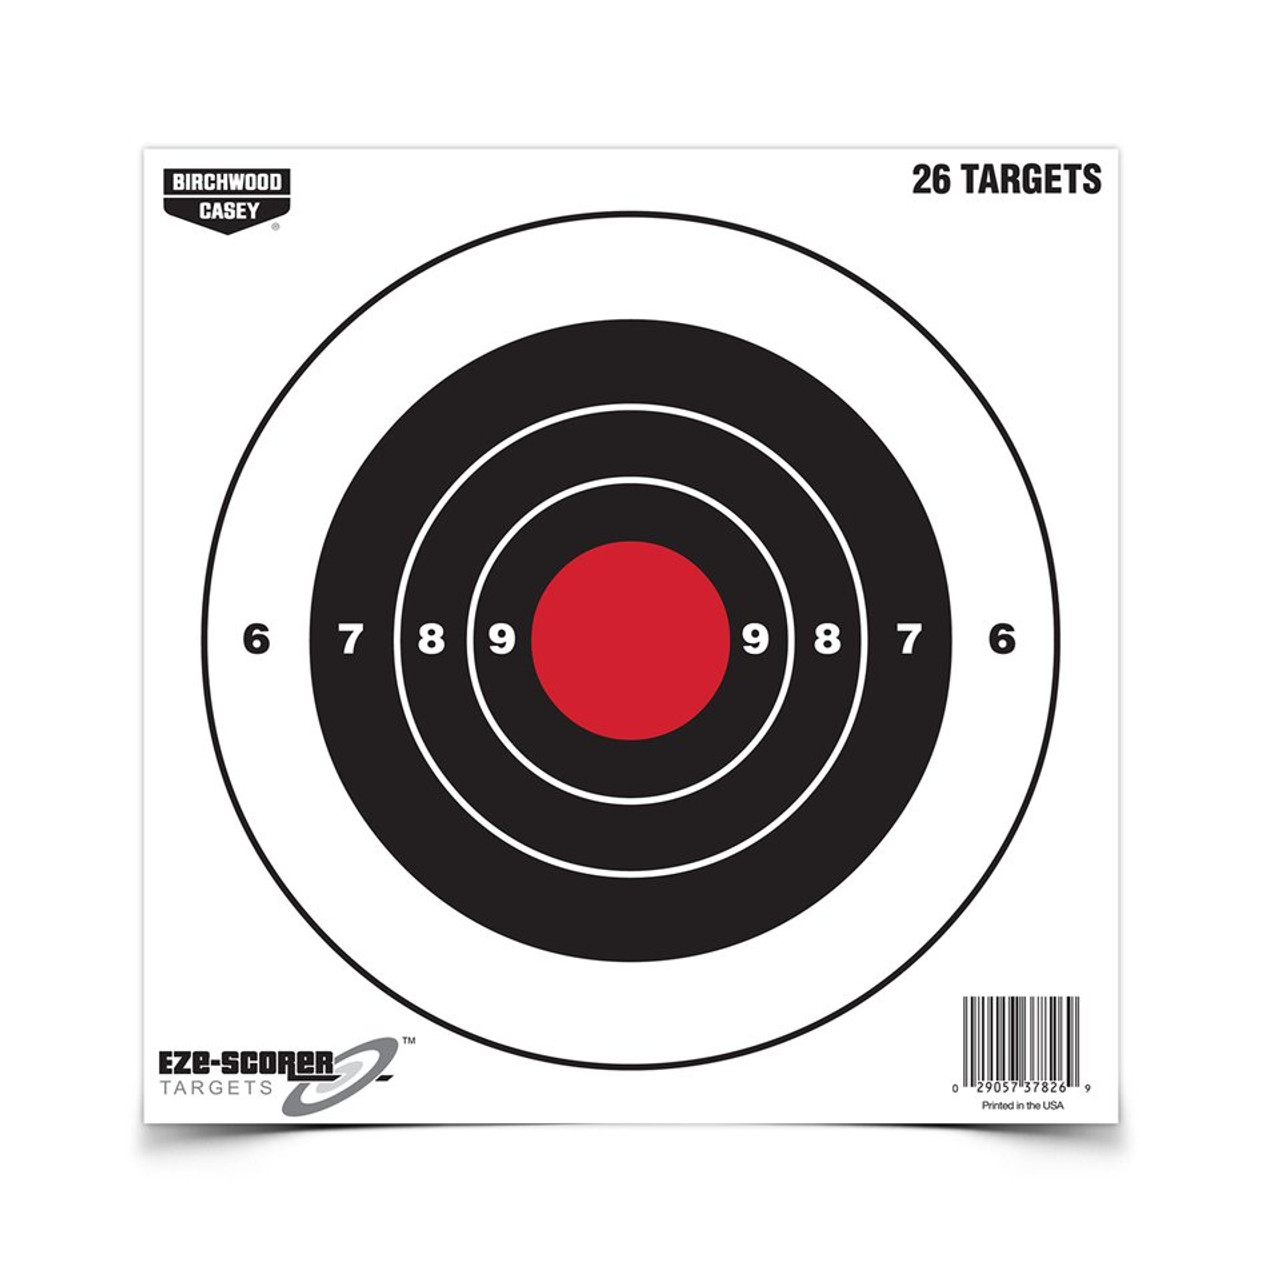 Eze-Scorer 8 Inch Bull's-Eye Target, 26 Targets
Birchwood Casey